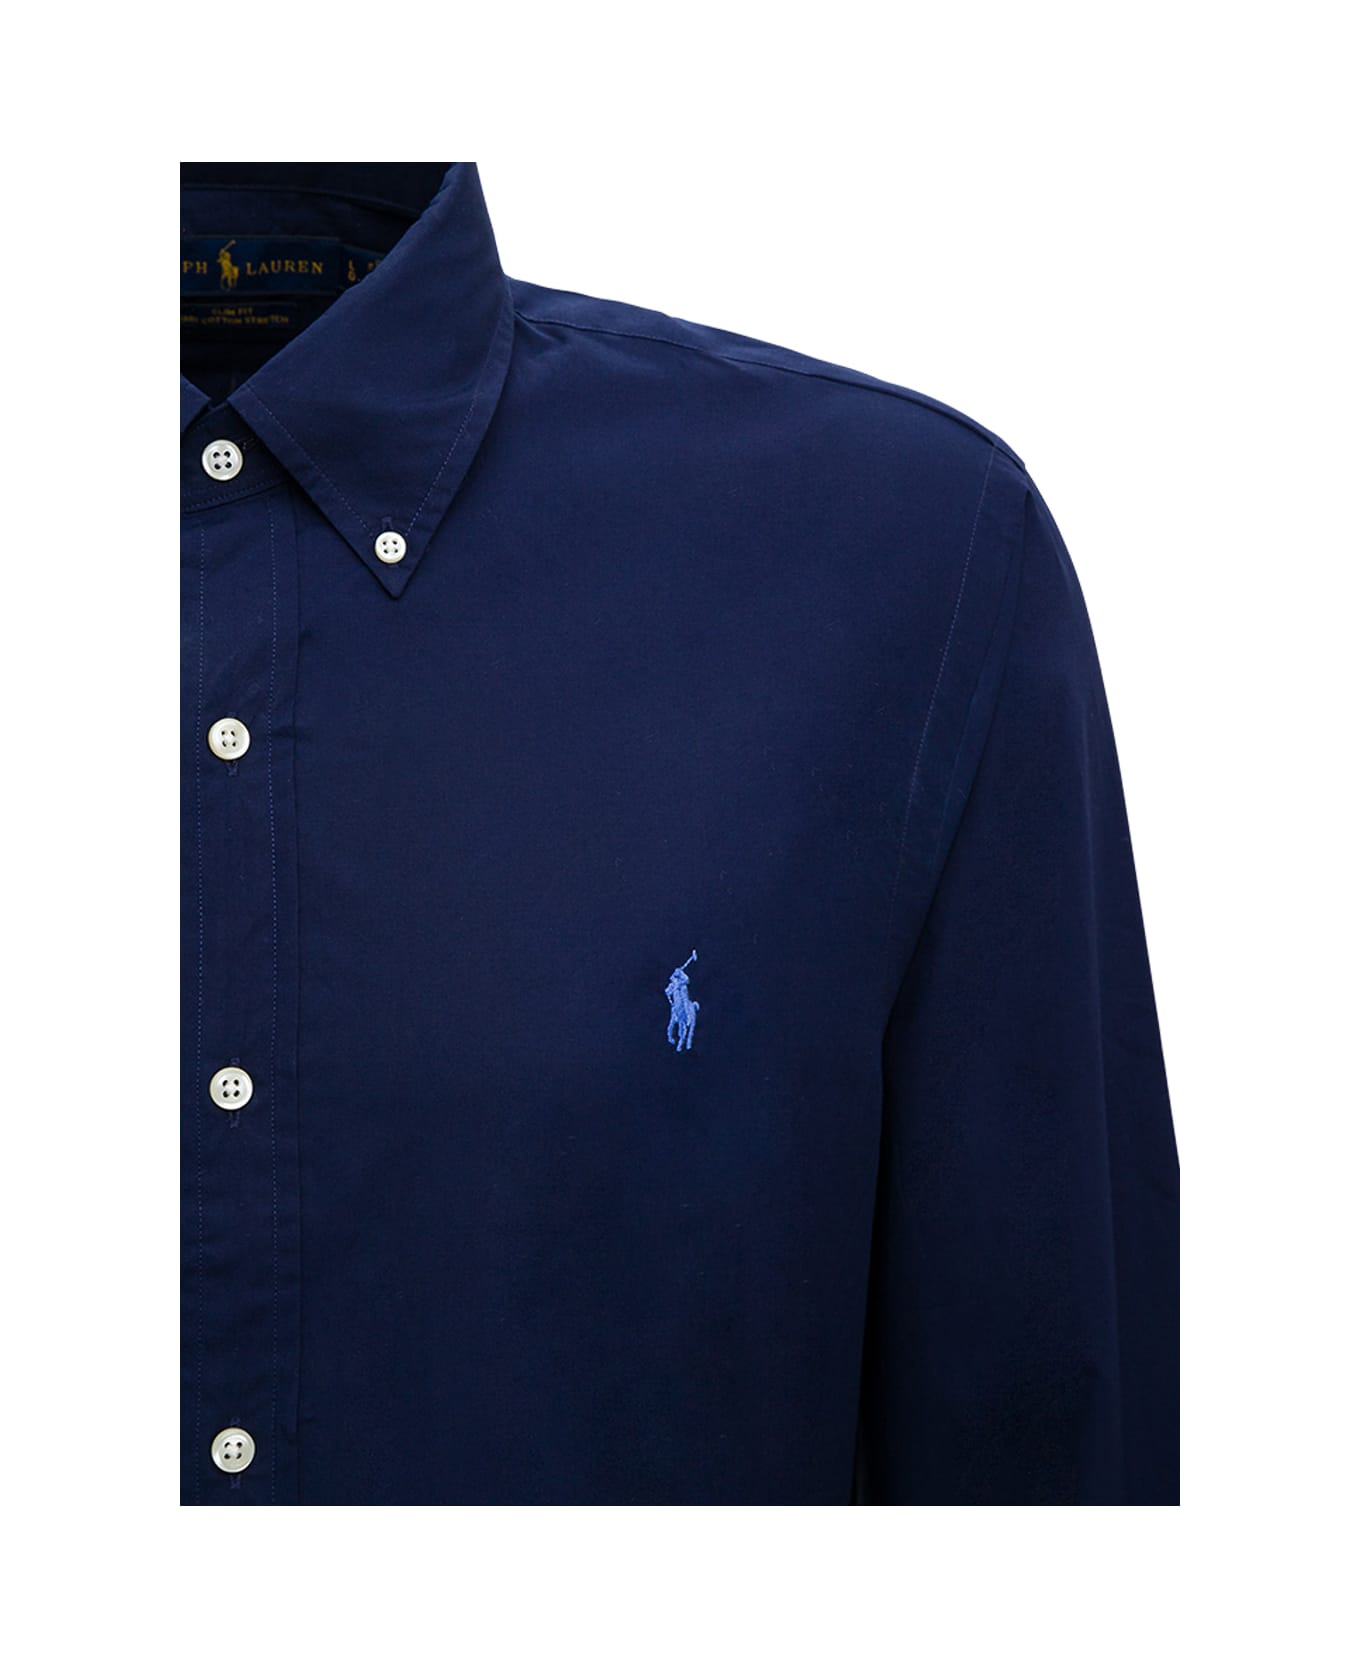 Ralph Lauren Blue Cotton Shirt With Logo - Newport Navy